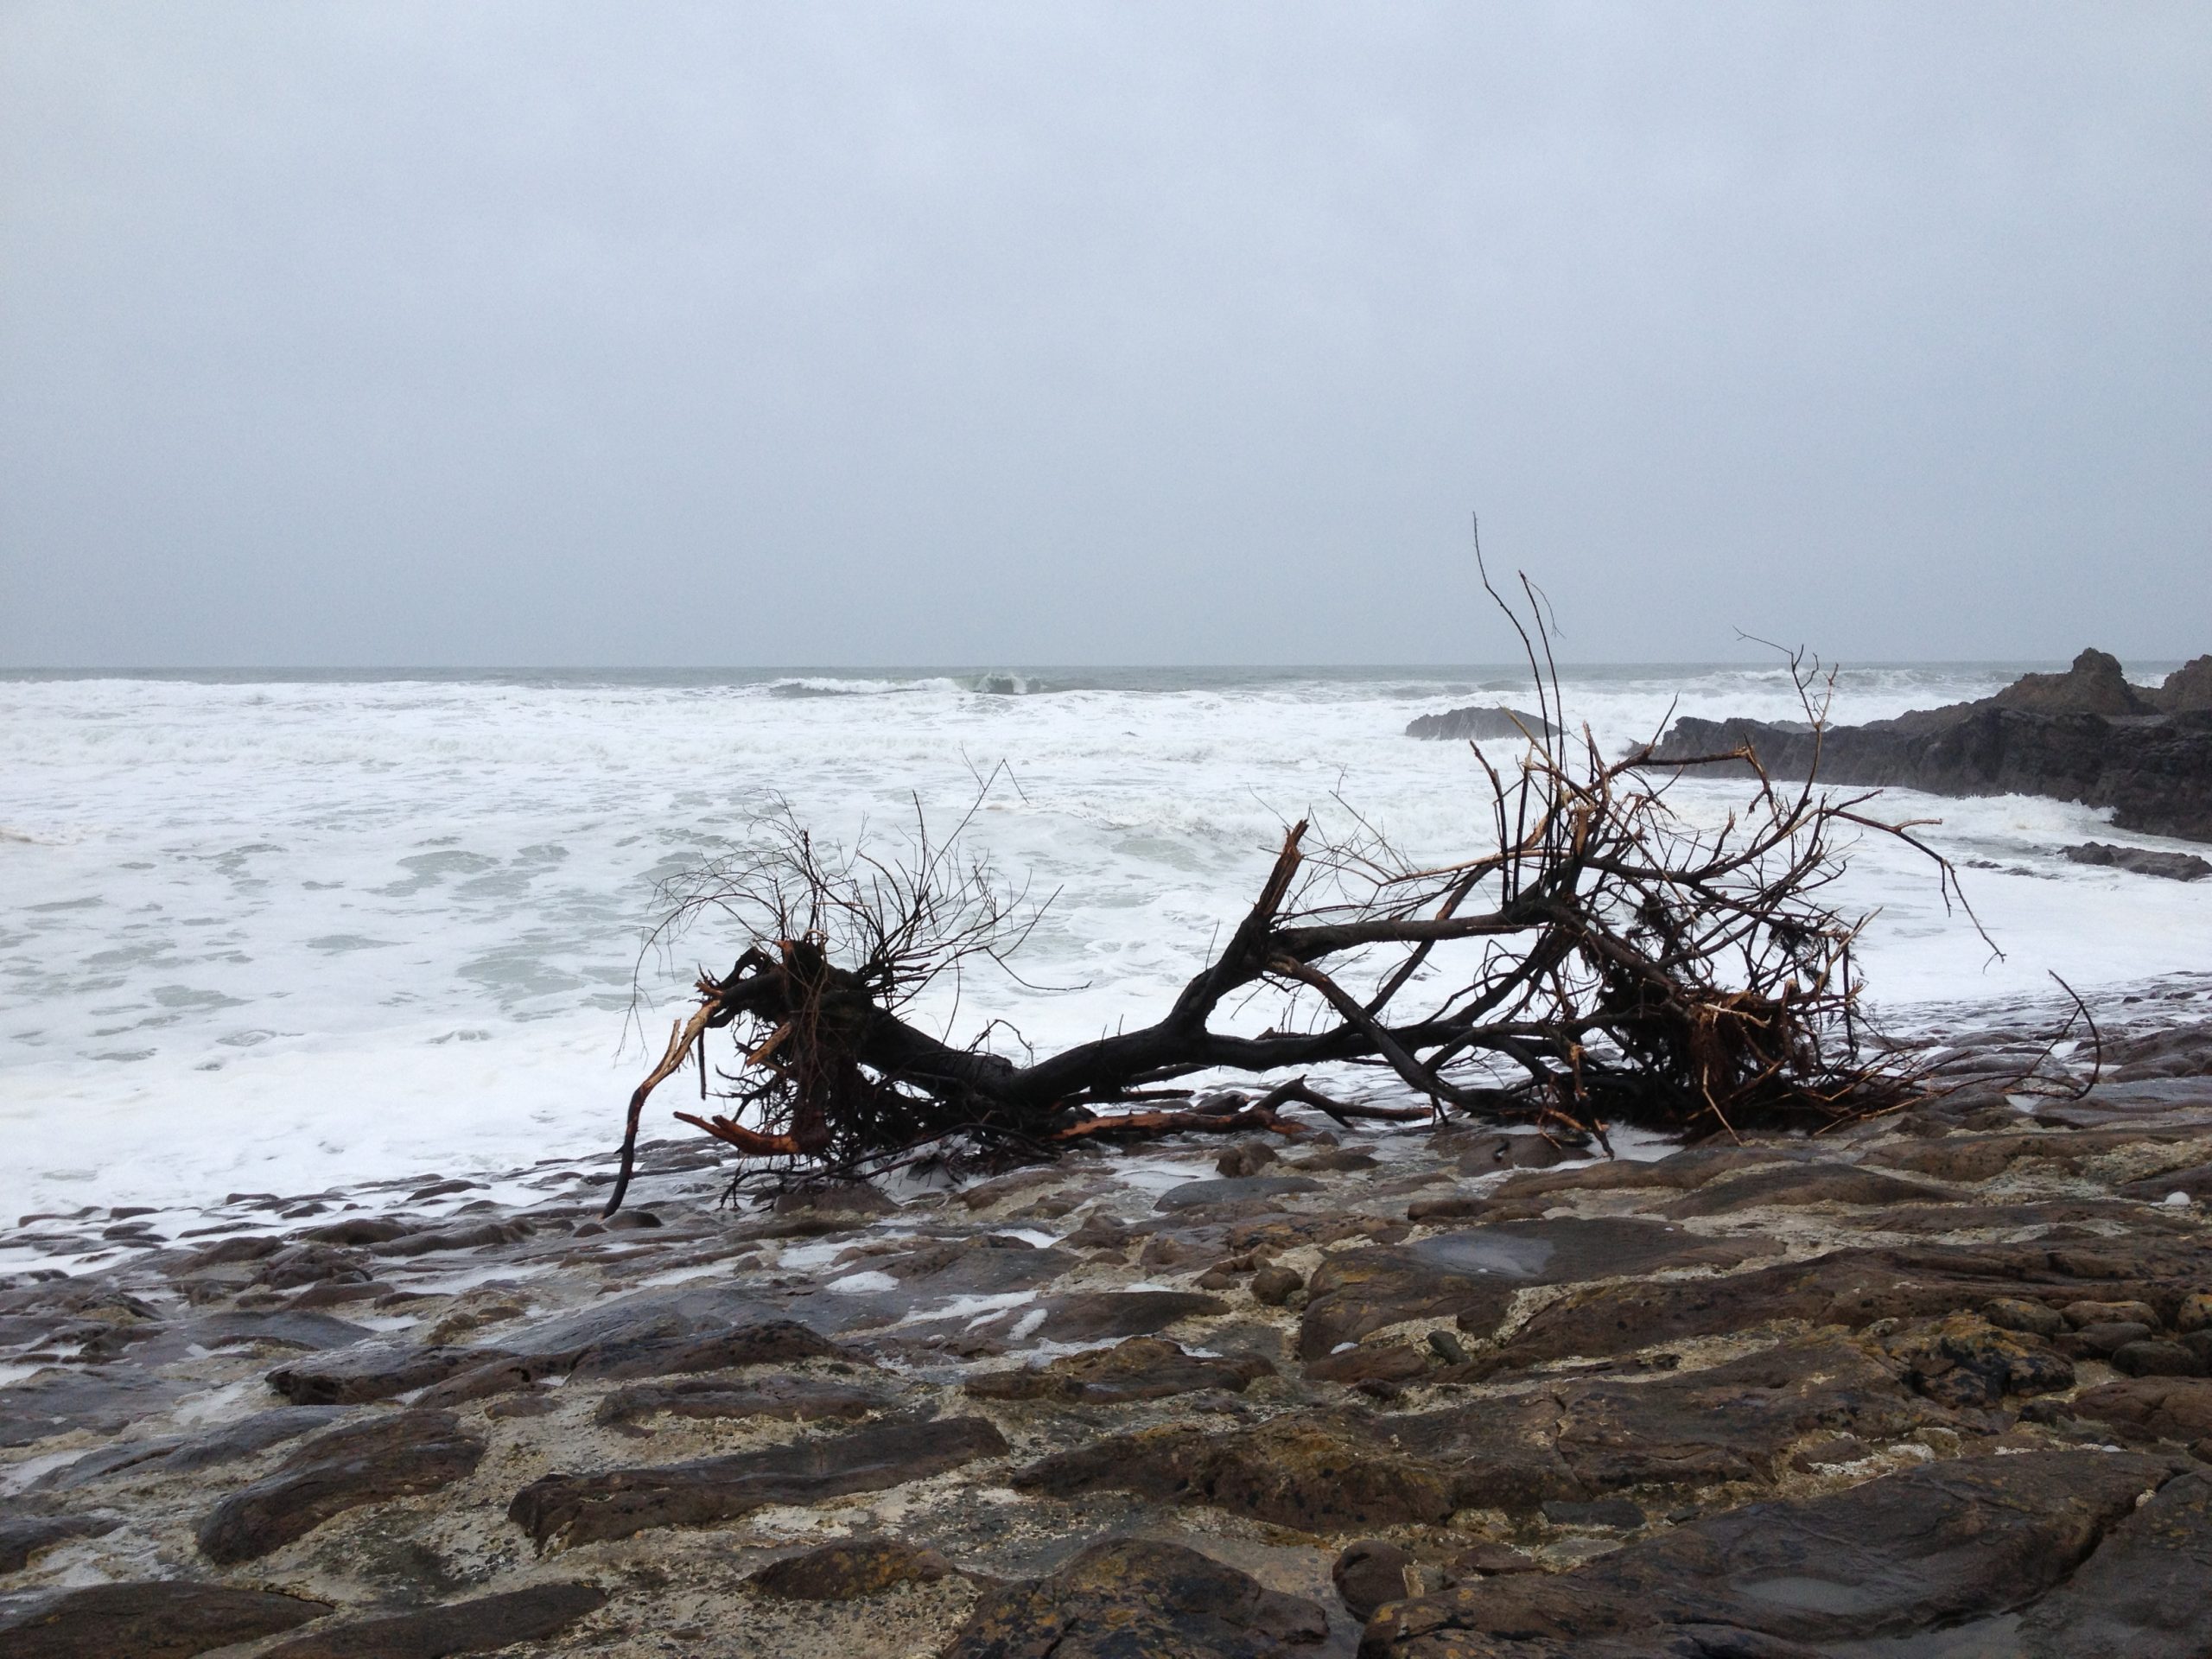 driftwood on a beach on an overcast day